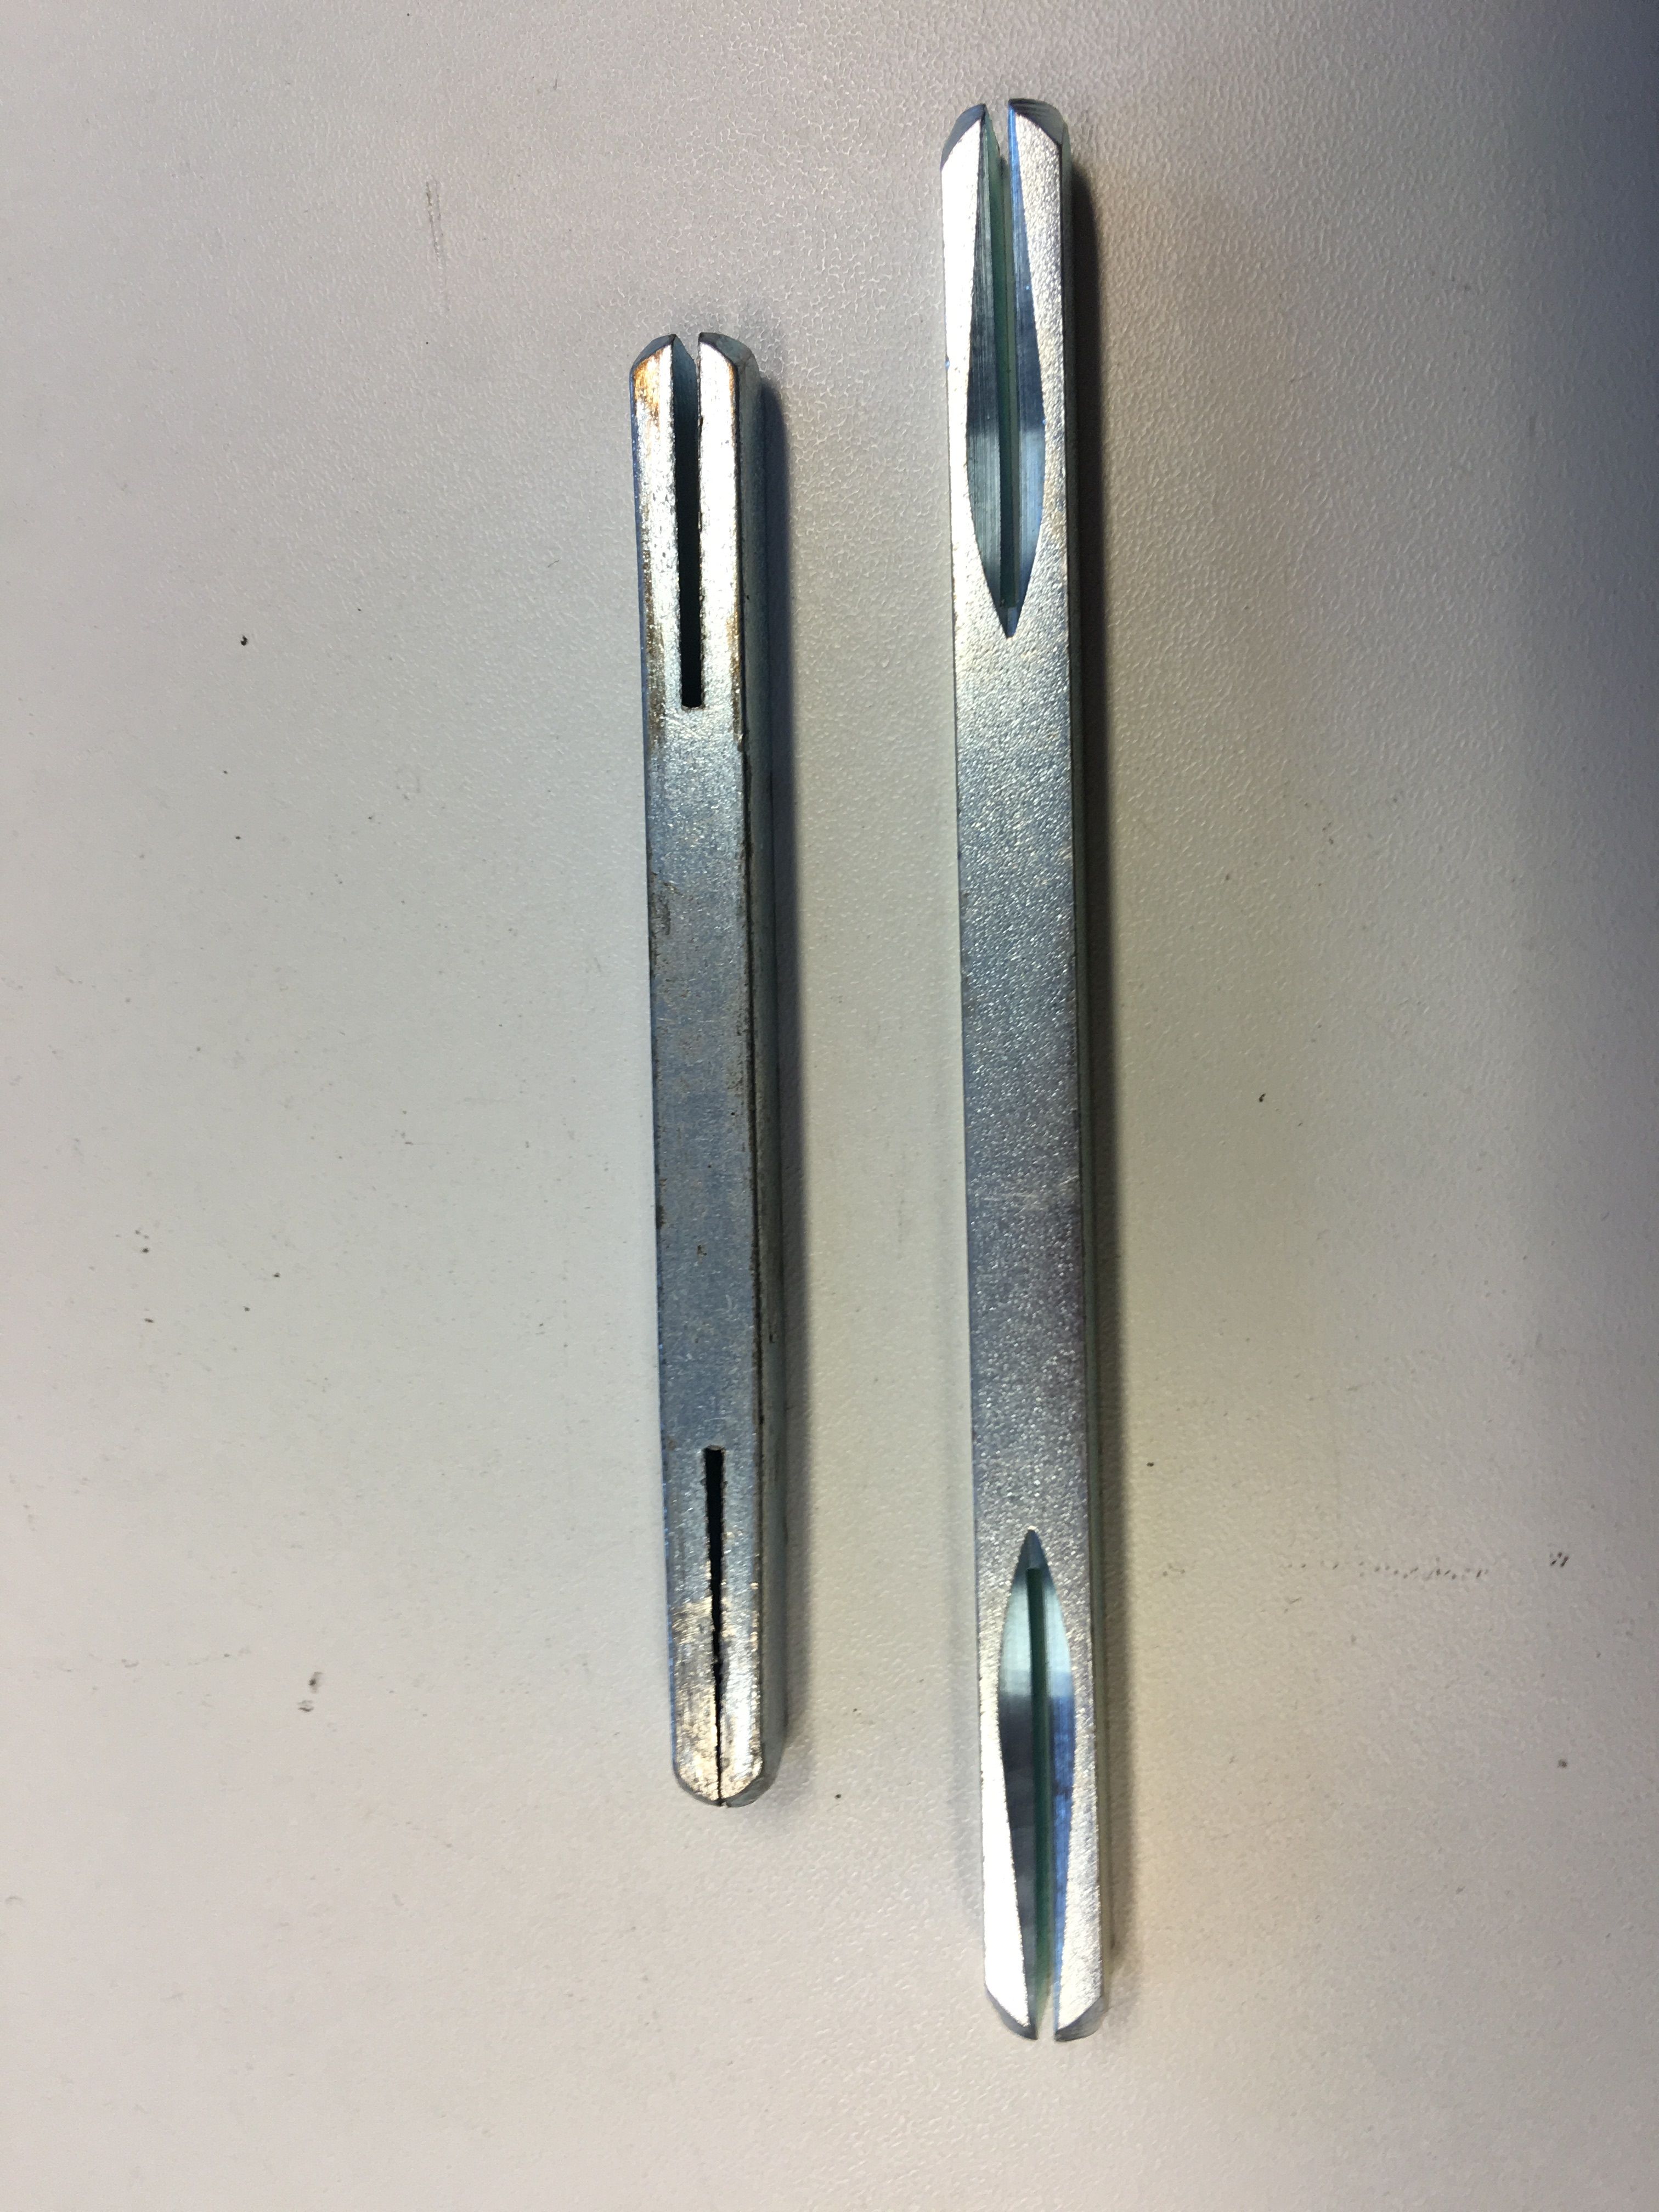 Krukstift - 10cm - metaal